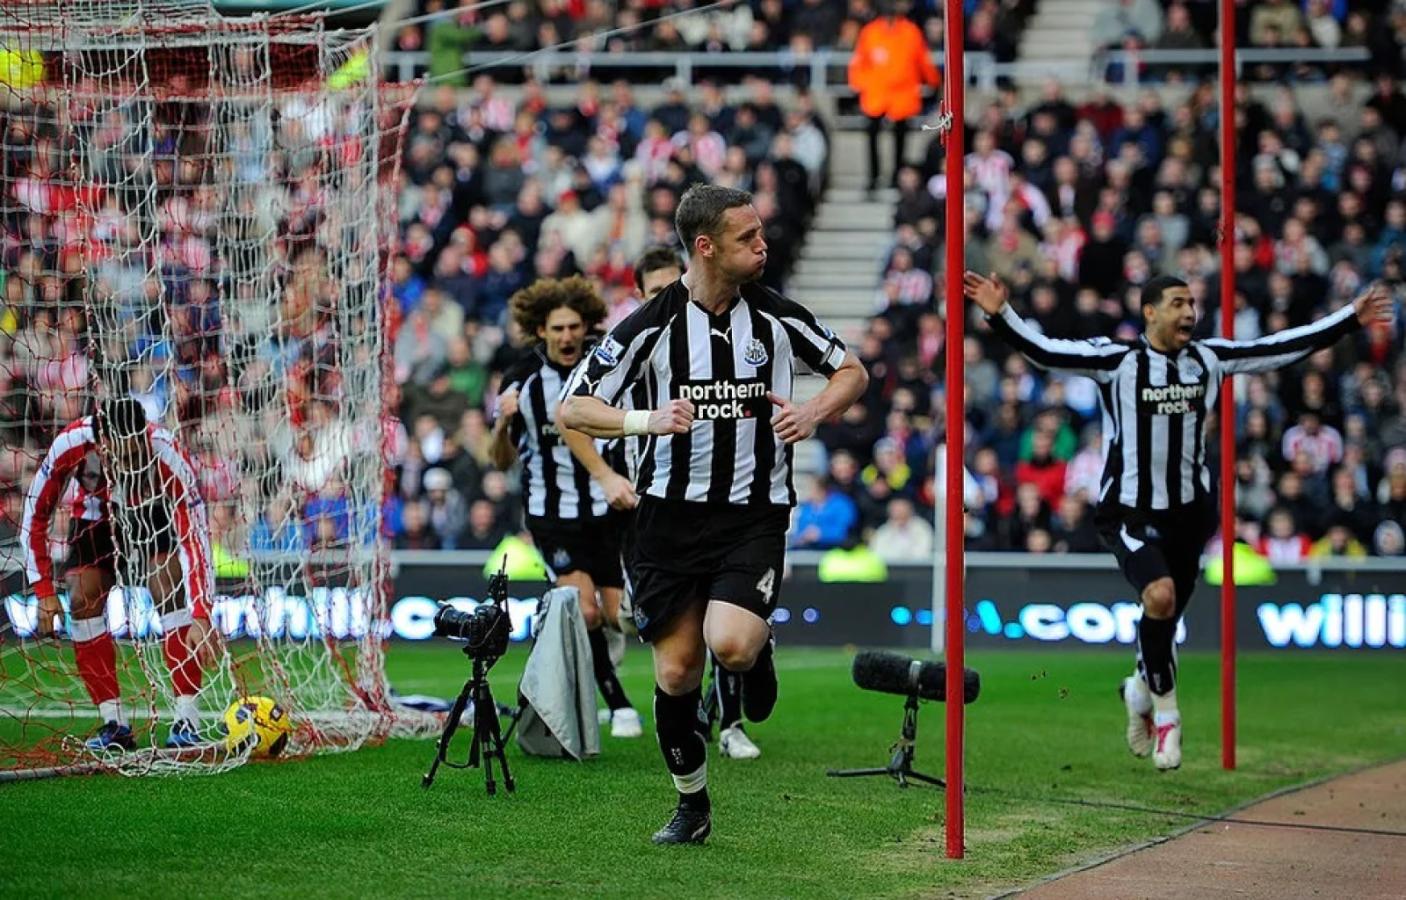 Imagen El argentino Fabricio Coloccini festeja atrás un gol de Newcastle en cancha de Sunderland. Foto: Getty